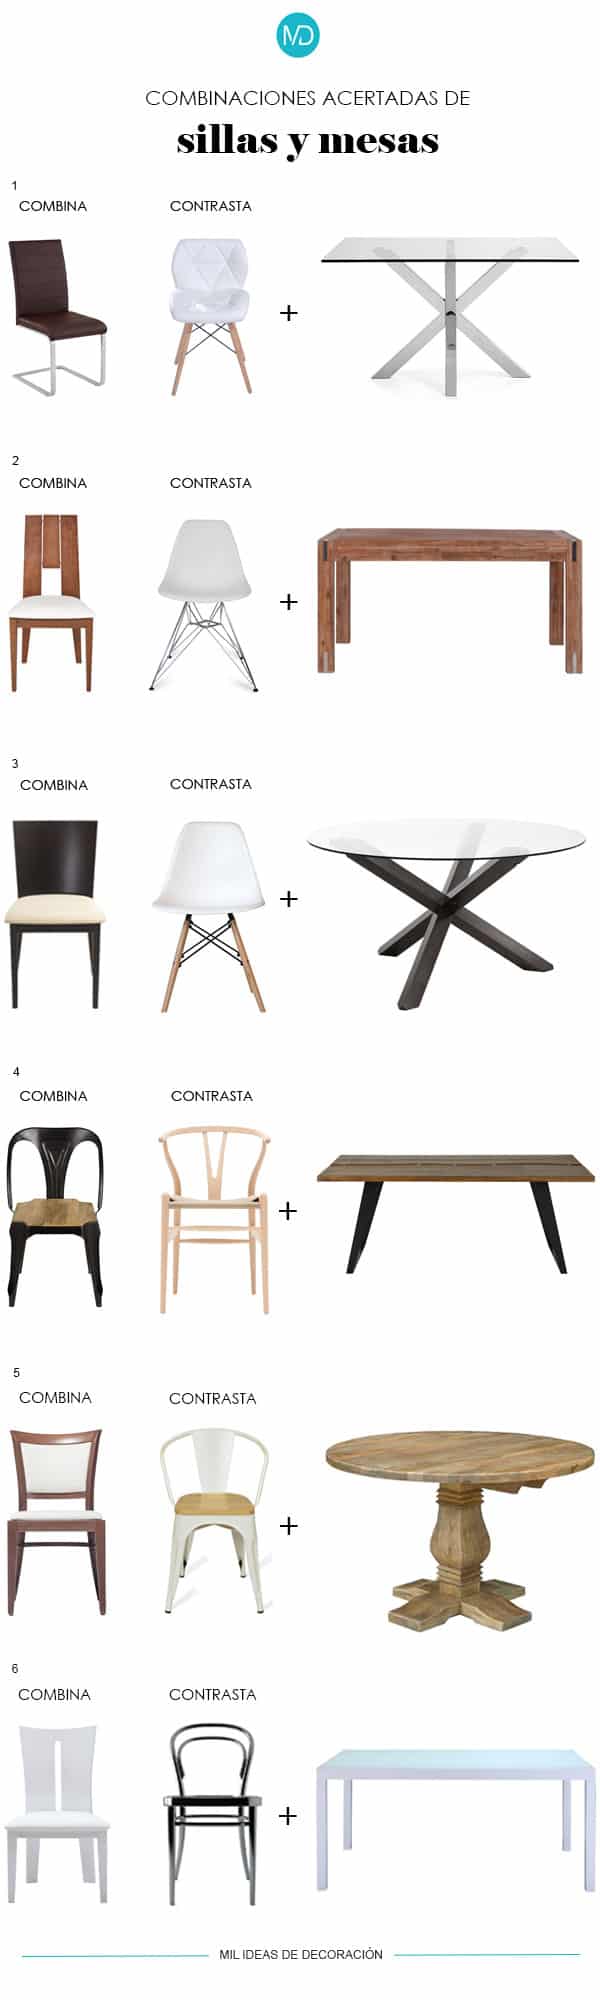 Combinación y contraste de sillas y mesas.